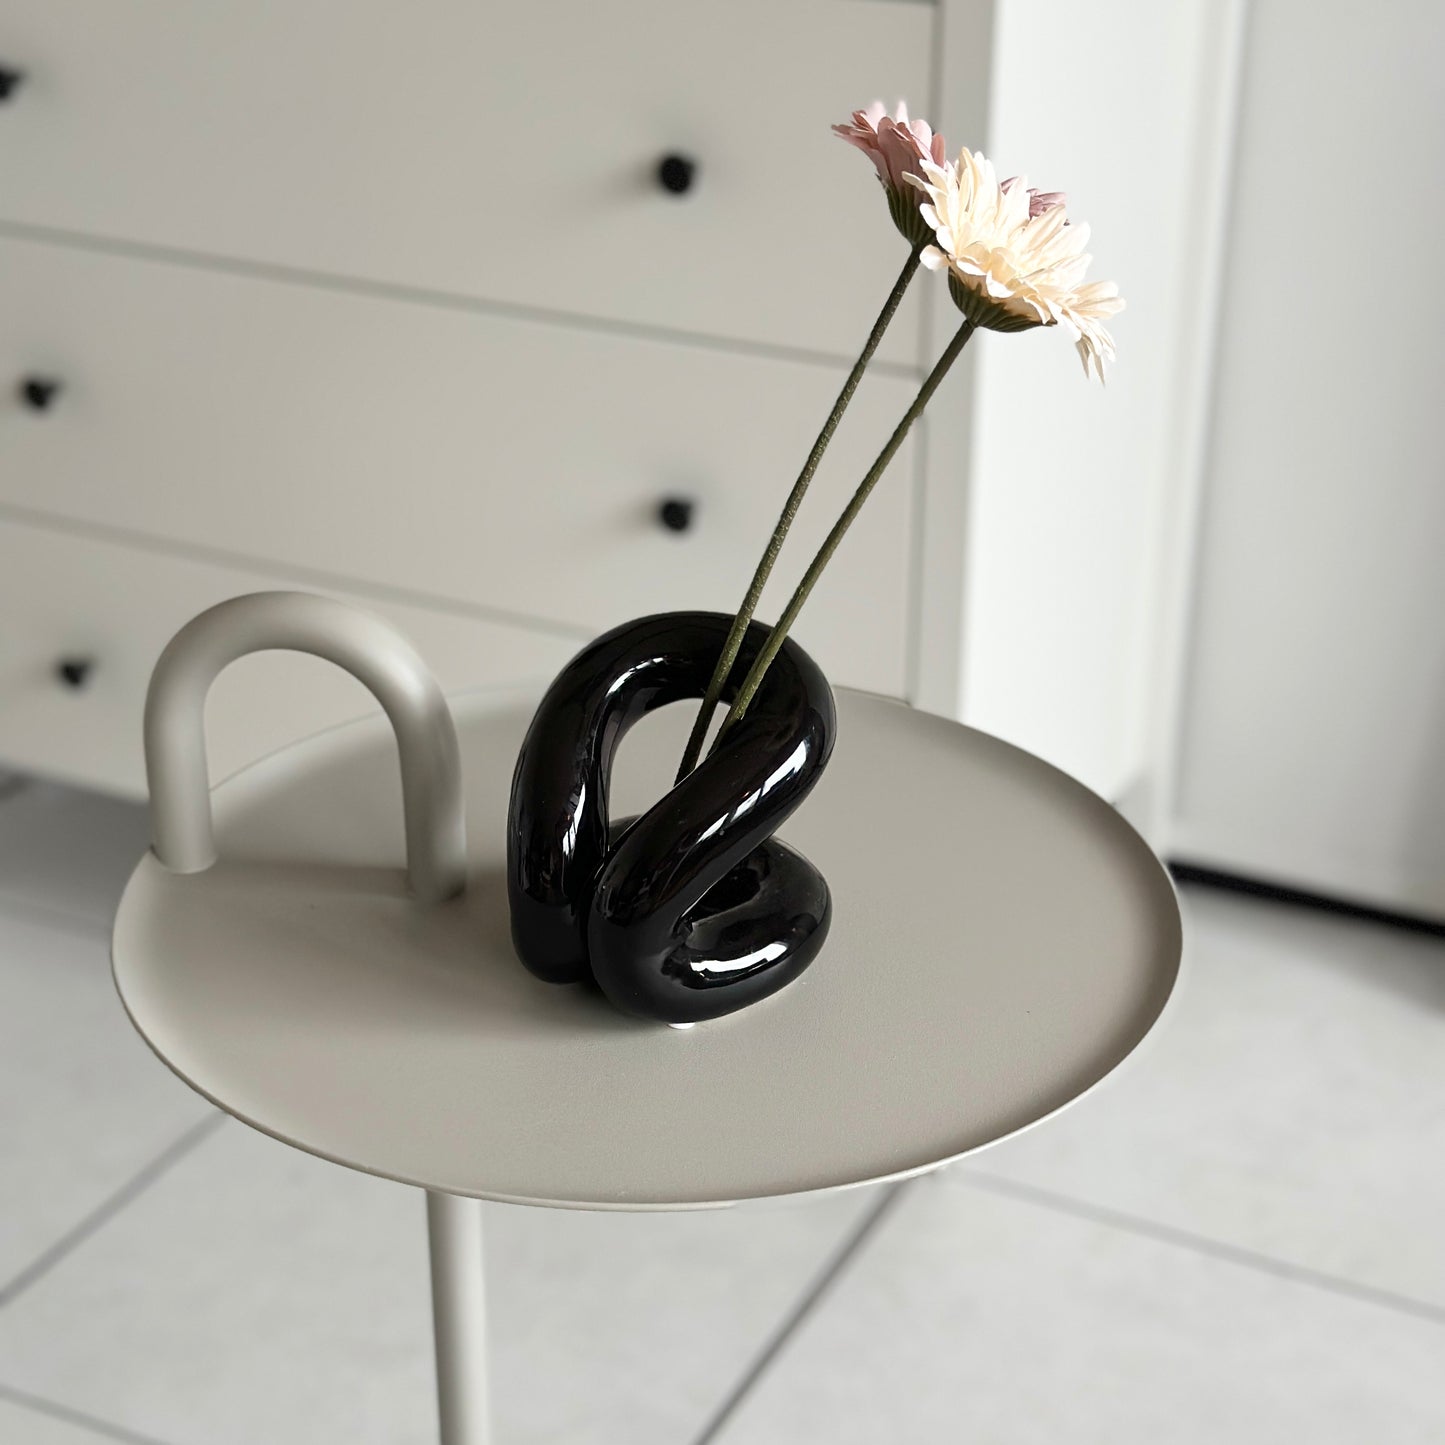 丸テーブルの上に花が2本飾られたセラミックの黒のオブジェが置かれている